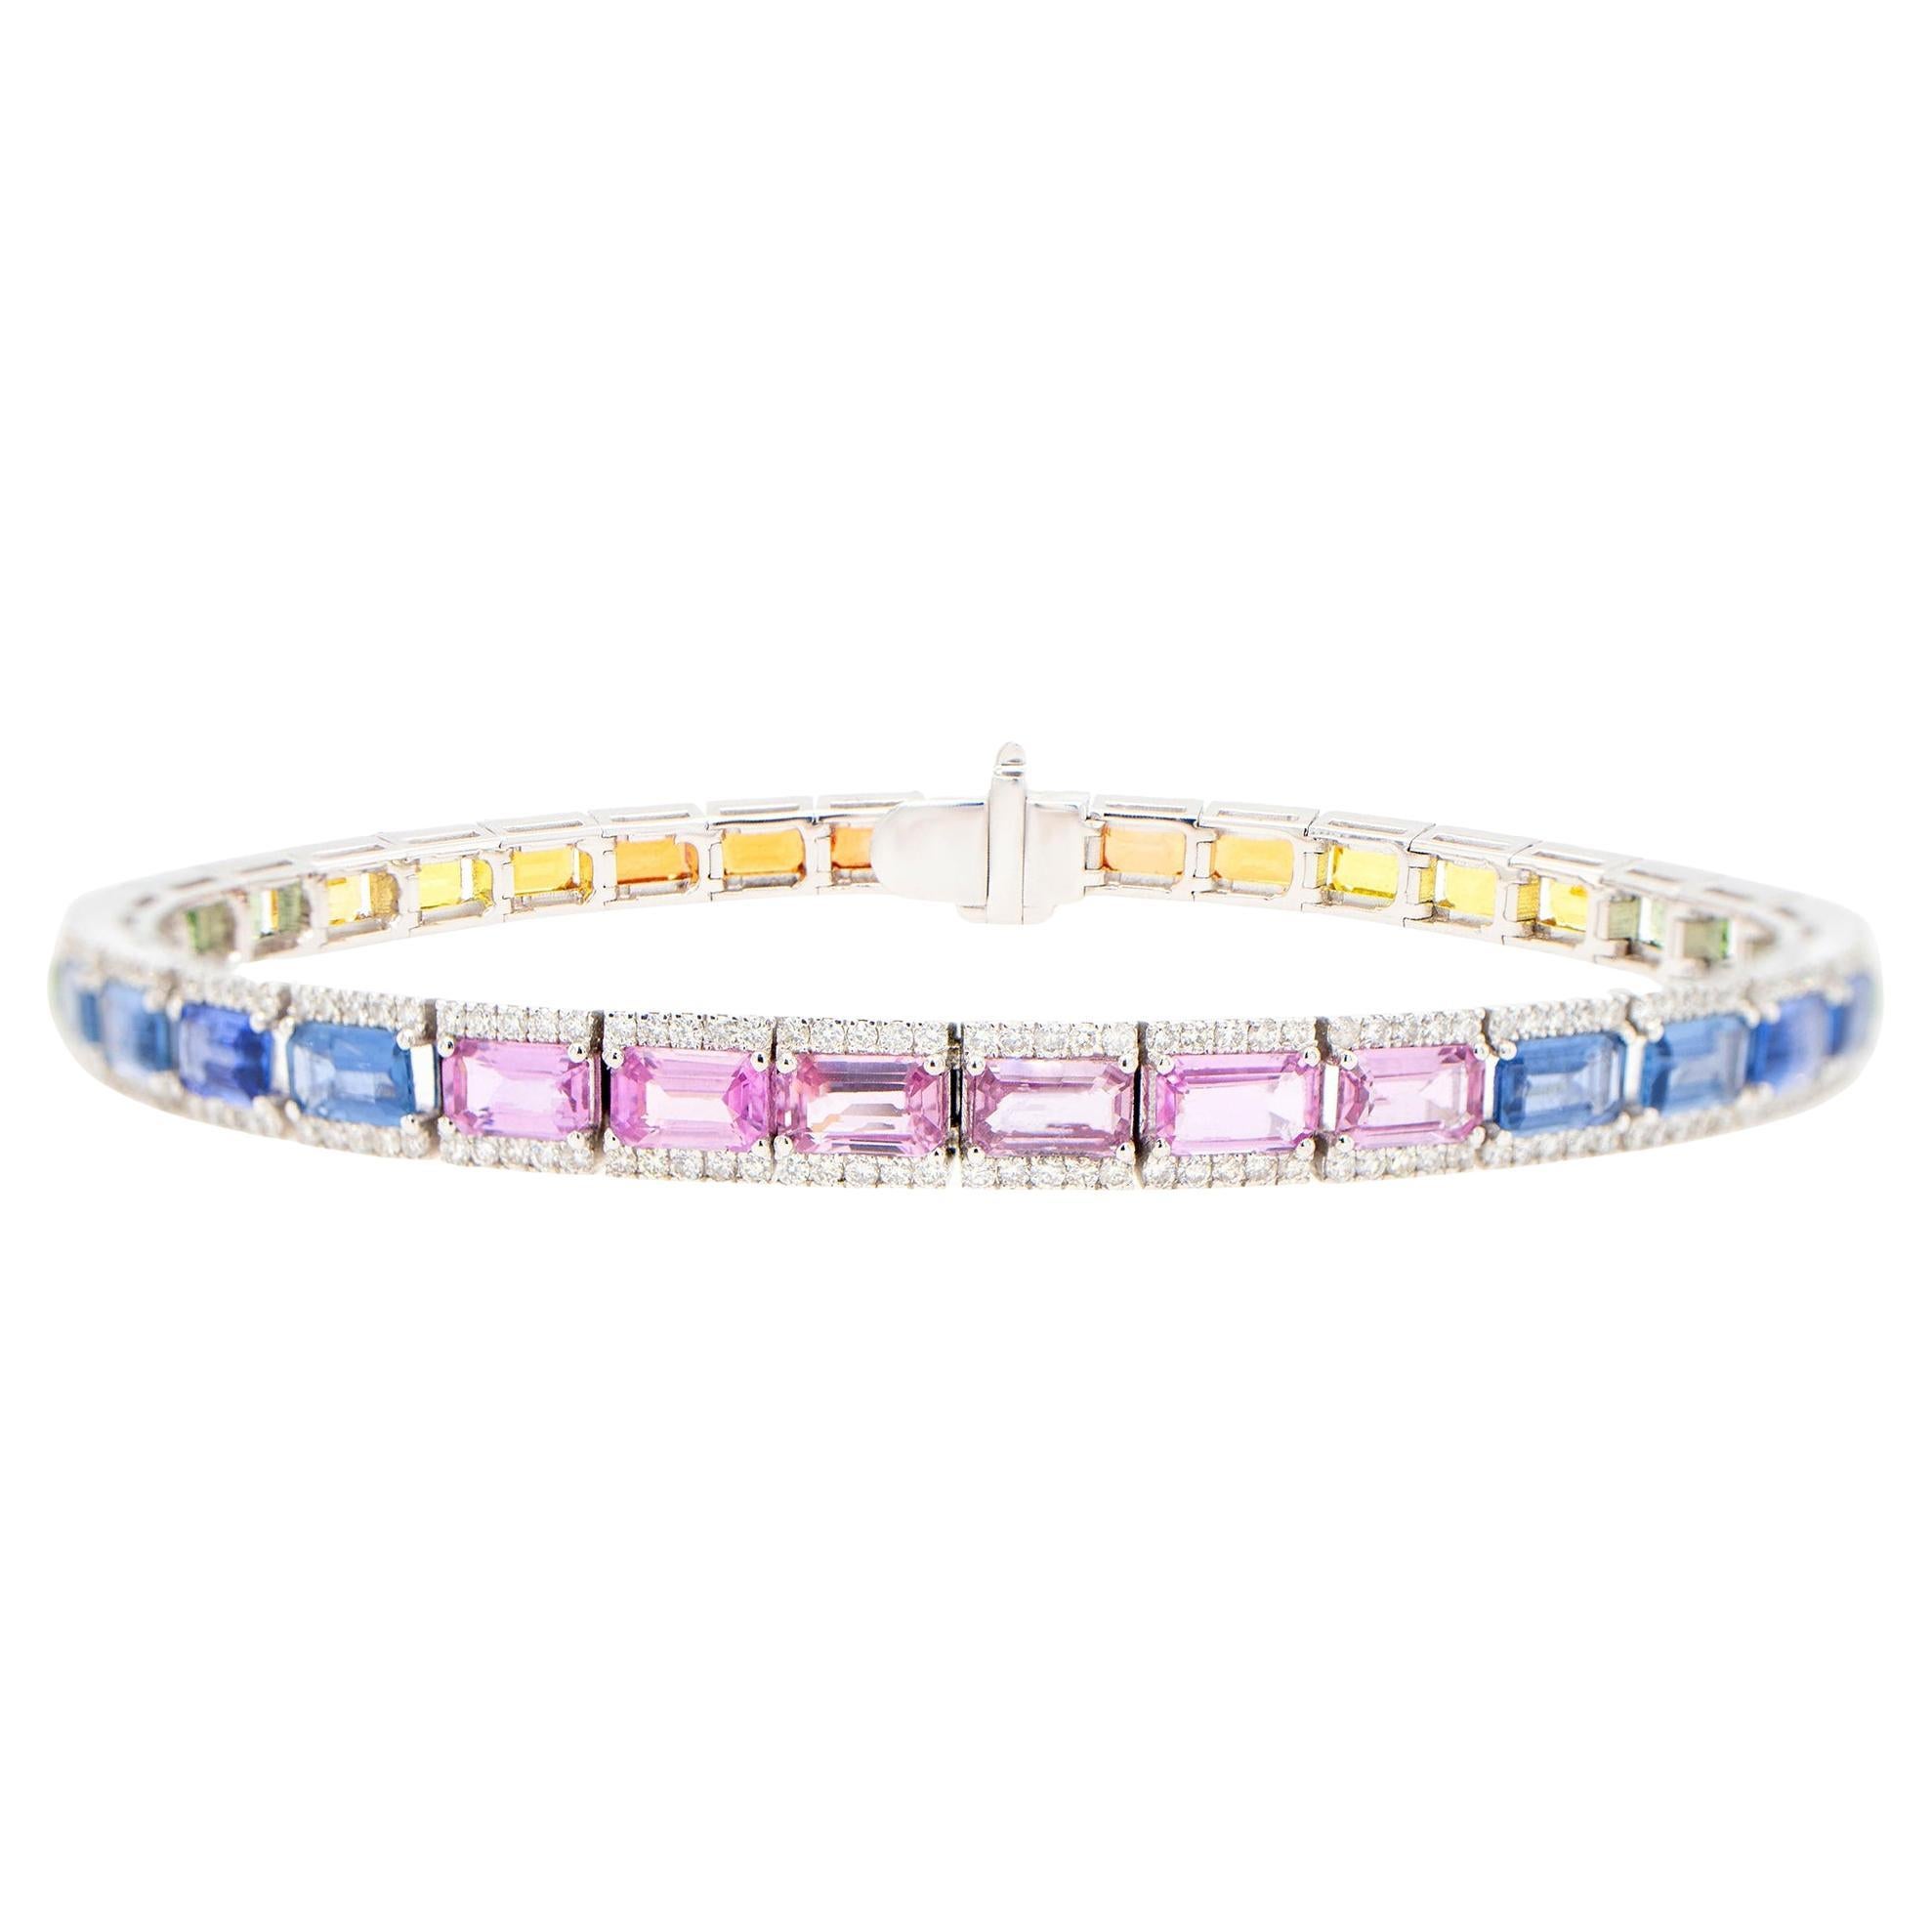 Baguette Cut Multicolor Sapphires Rainbow Bracelet With Diamonds 12.7 Carats 18K